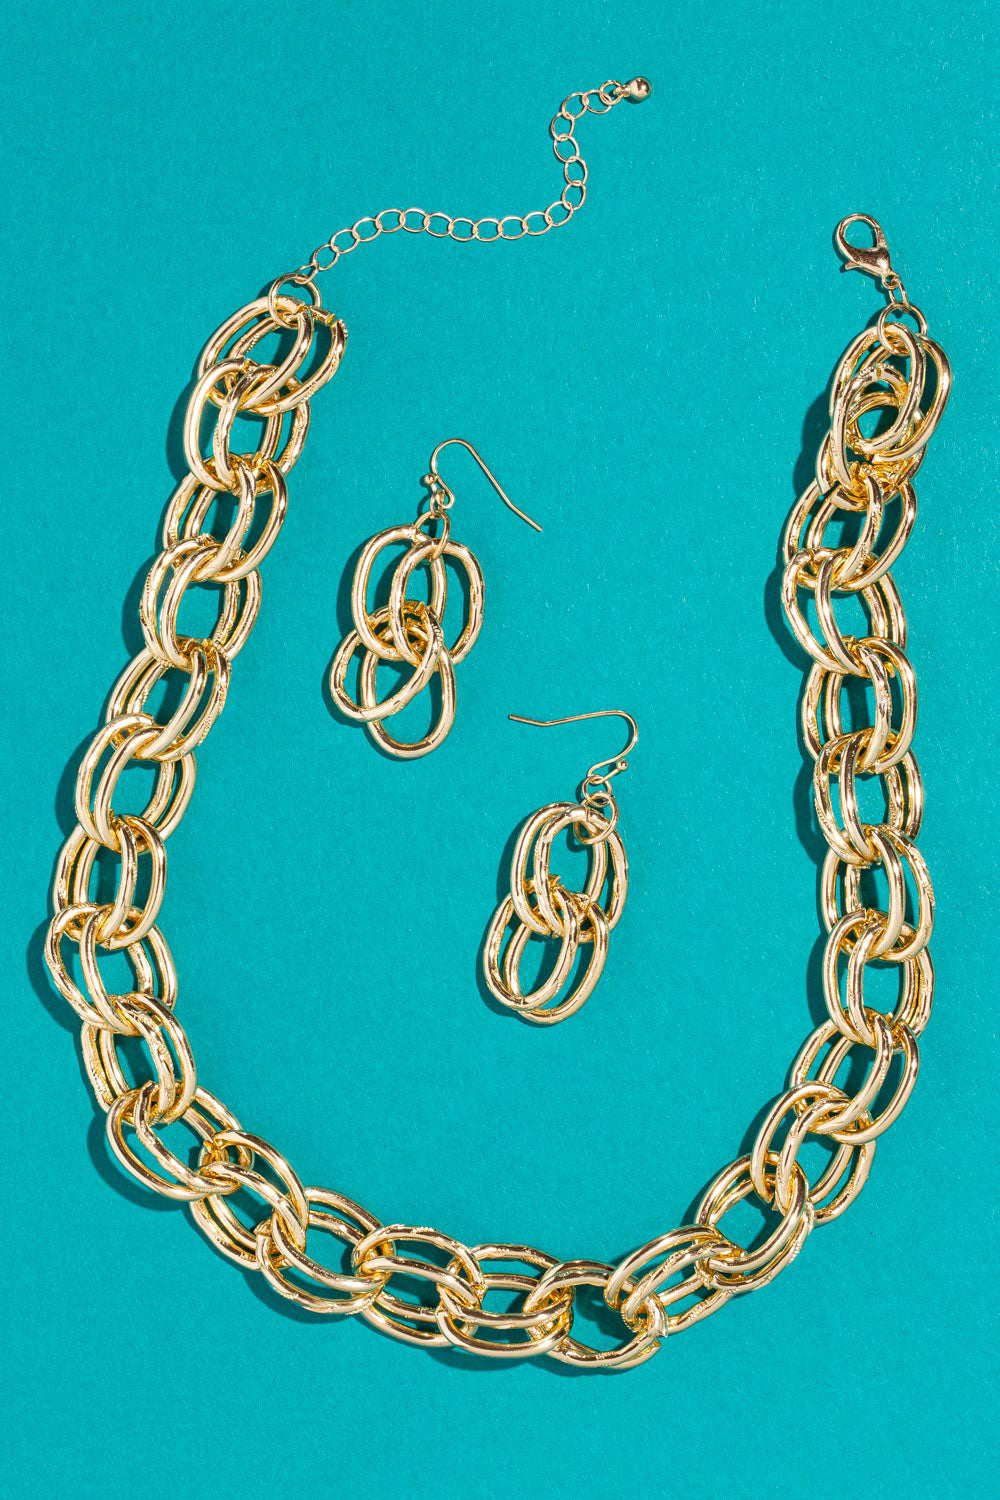 Type 3 Helen of Troy Necklace/ Earring Set